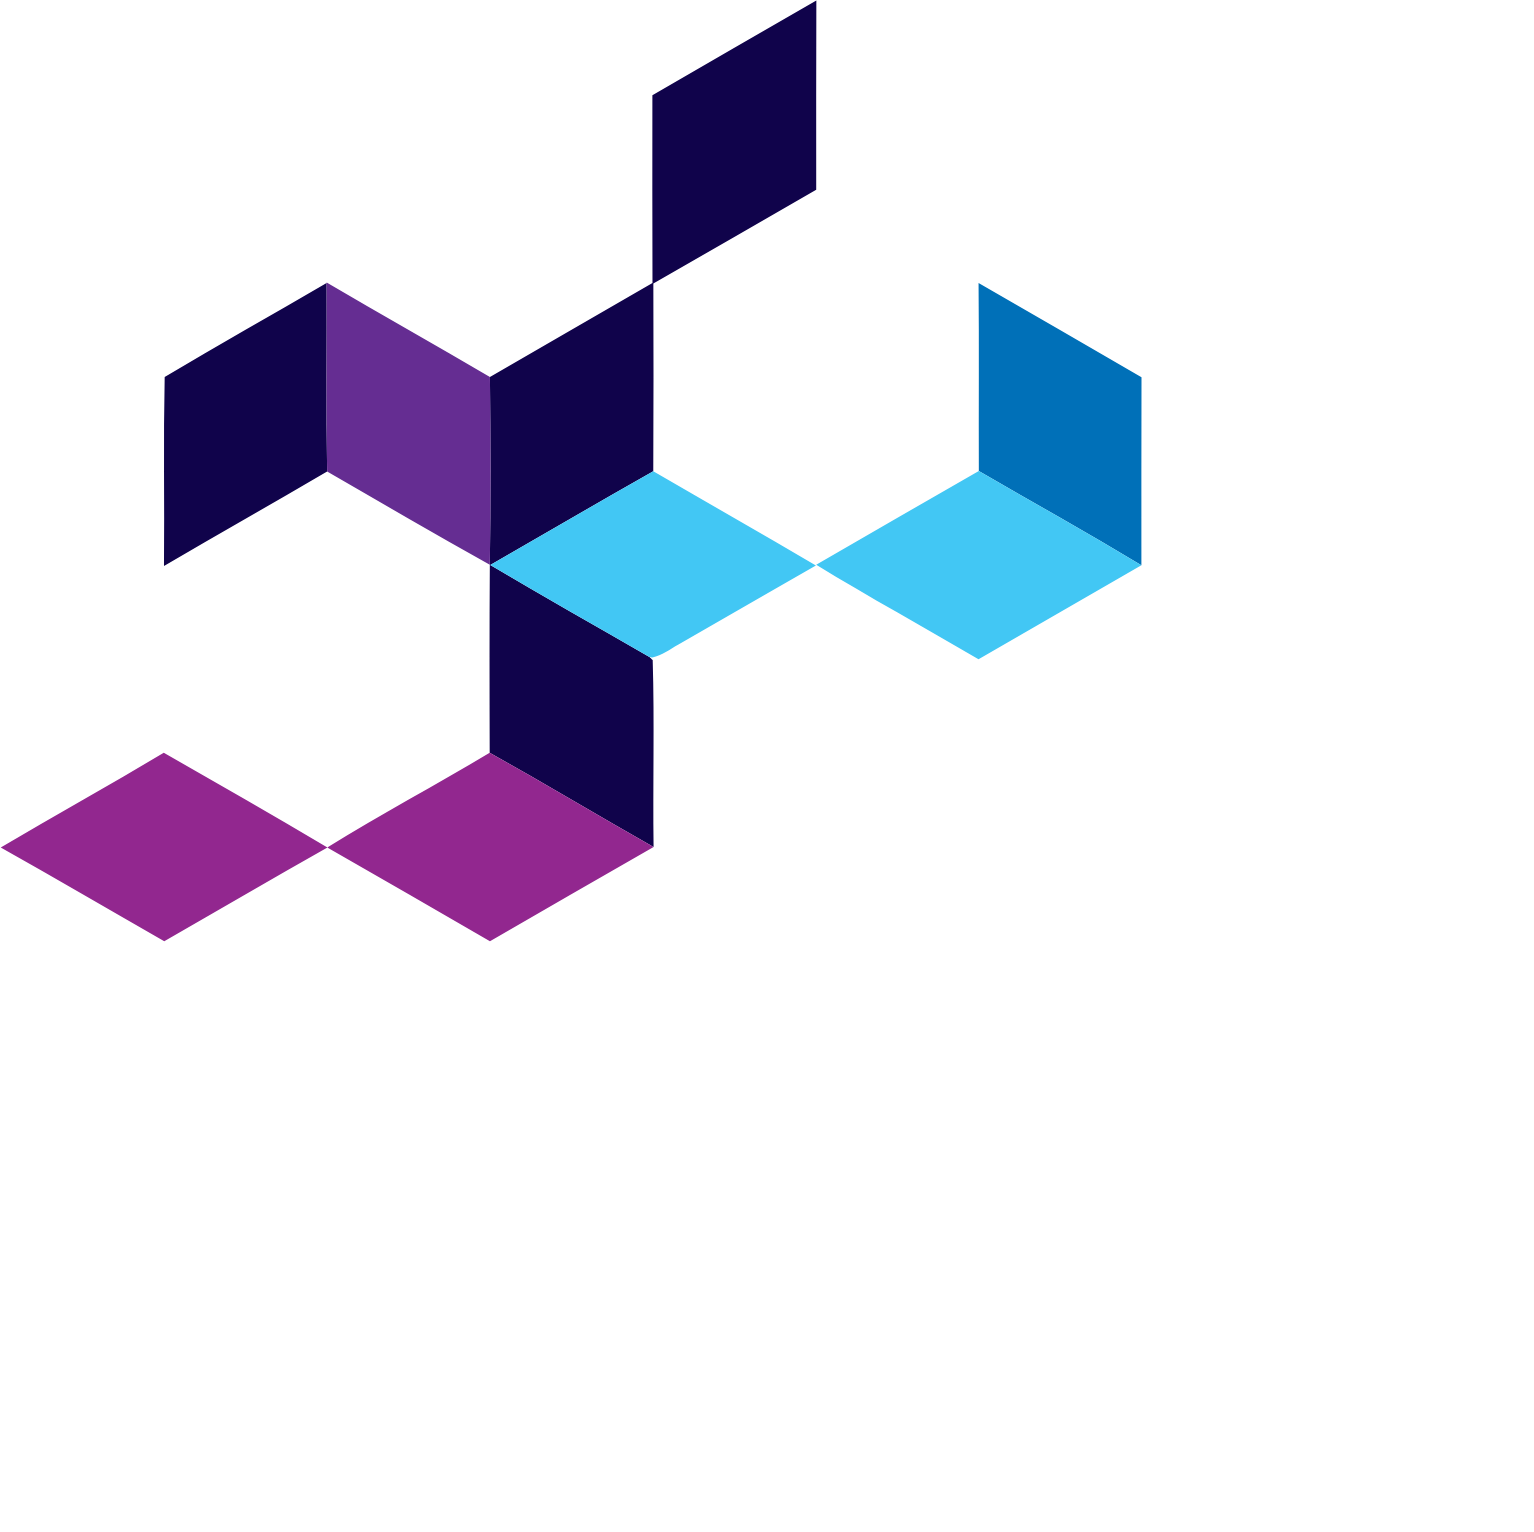 Elm Company logo large for dark backgrounds (transparent PNG)